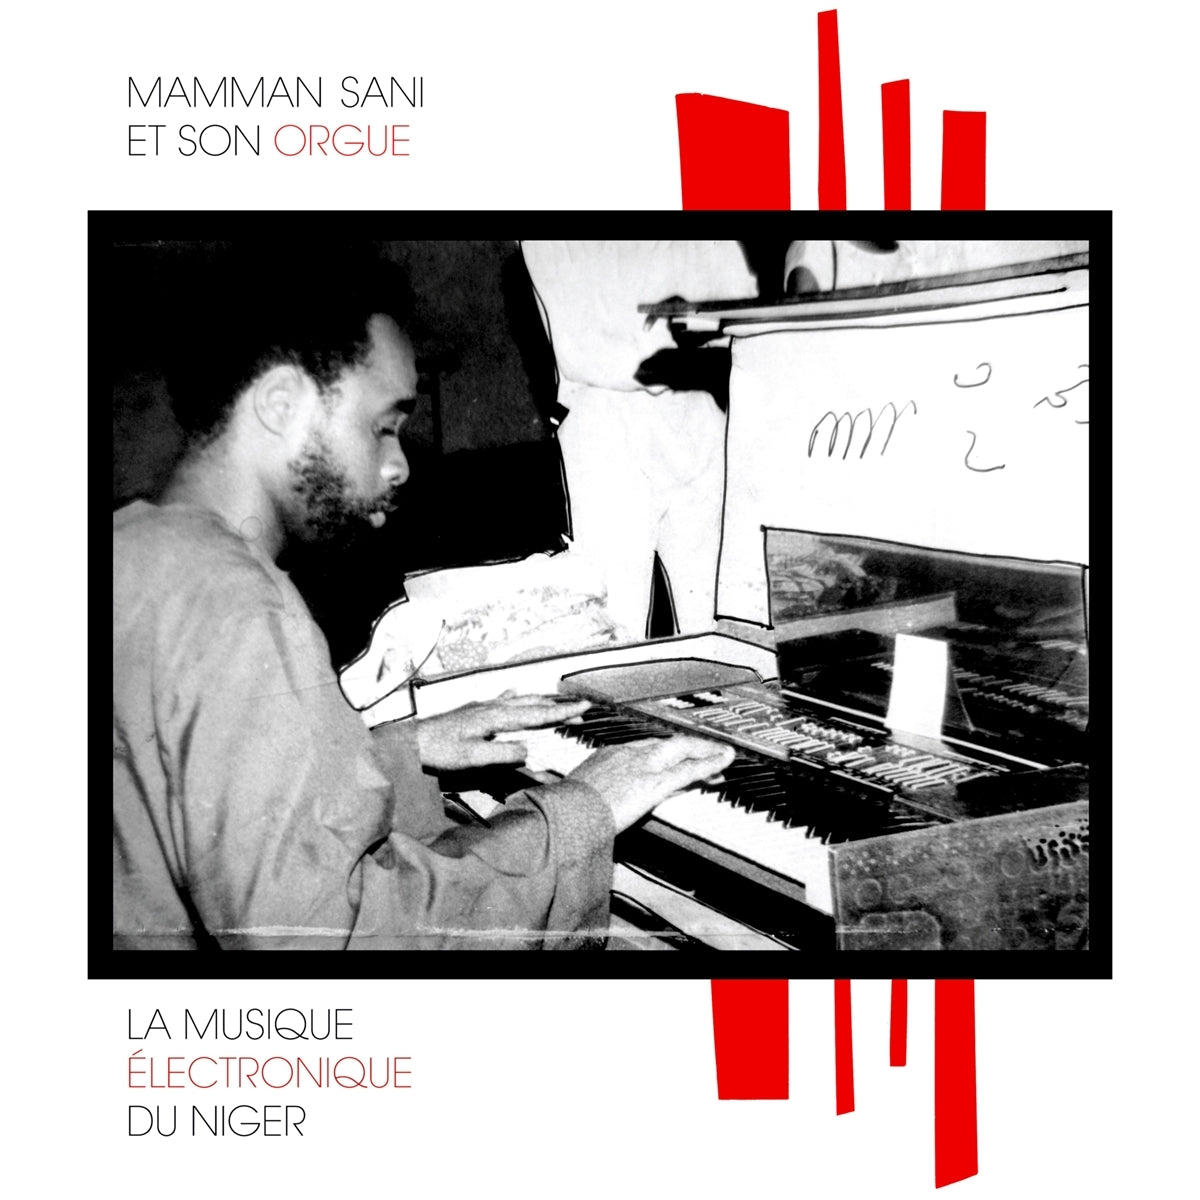 Mamman Sani - La Musique Electronique du Niger - LP